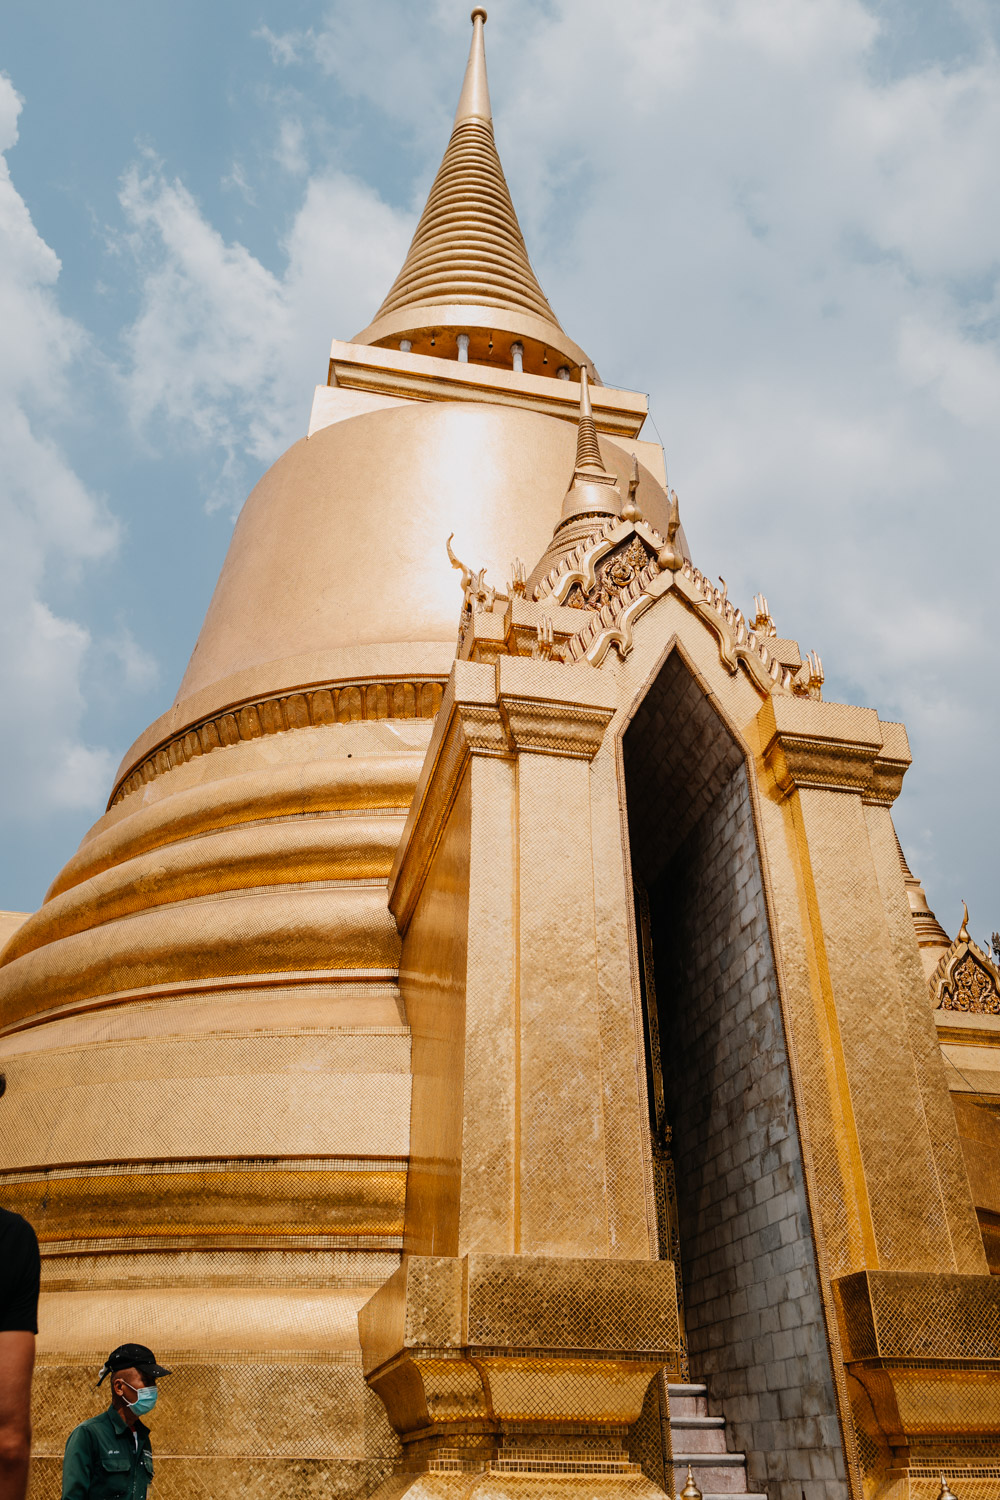 Grand Palace in Bangkok Thailand / Nina Danninger Photography